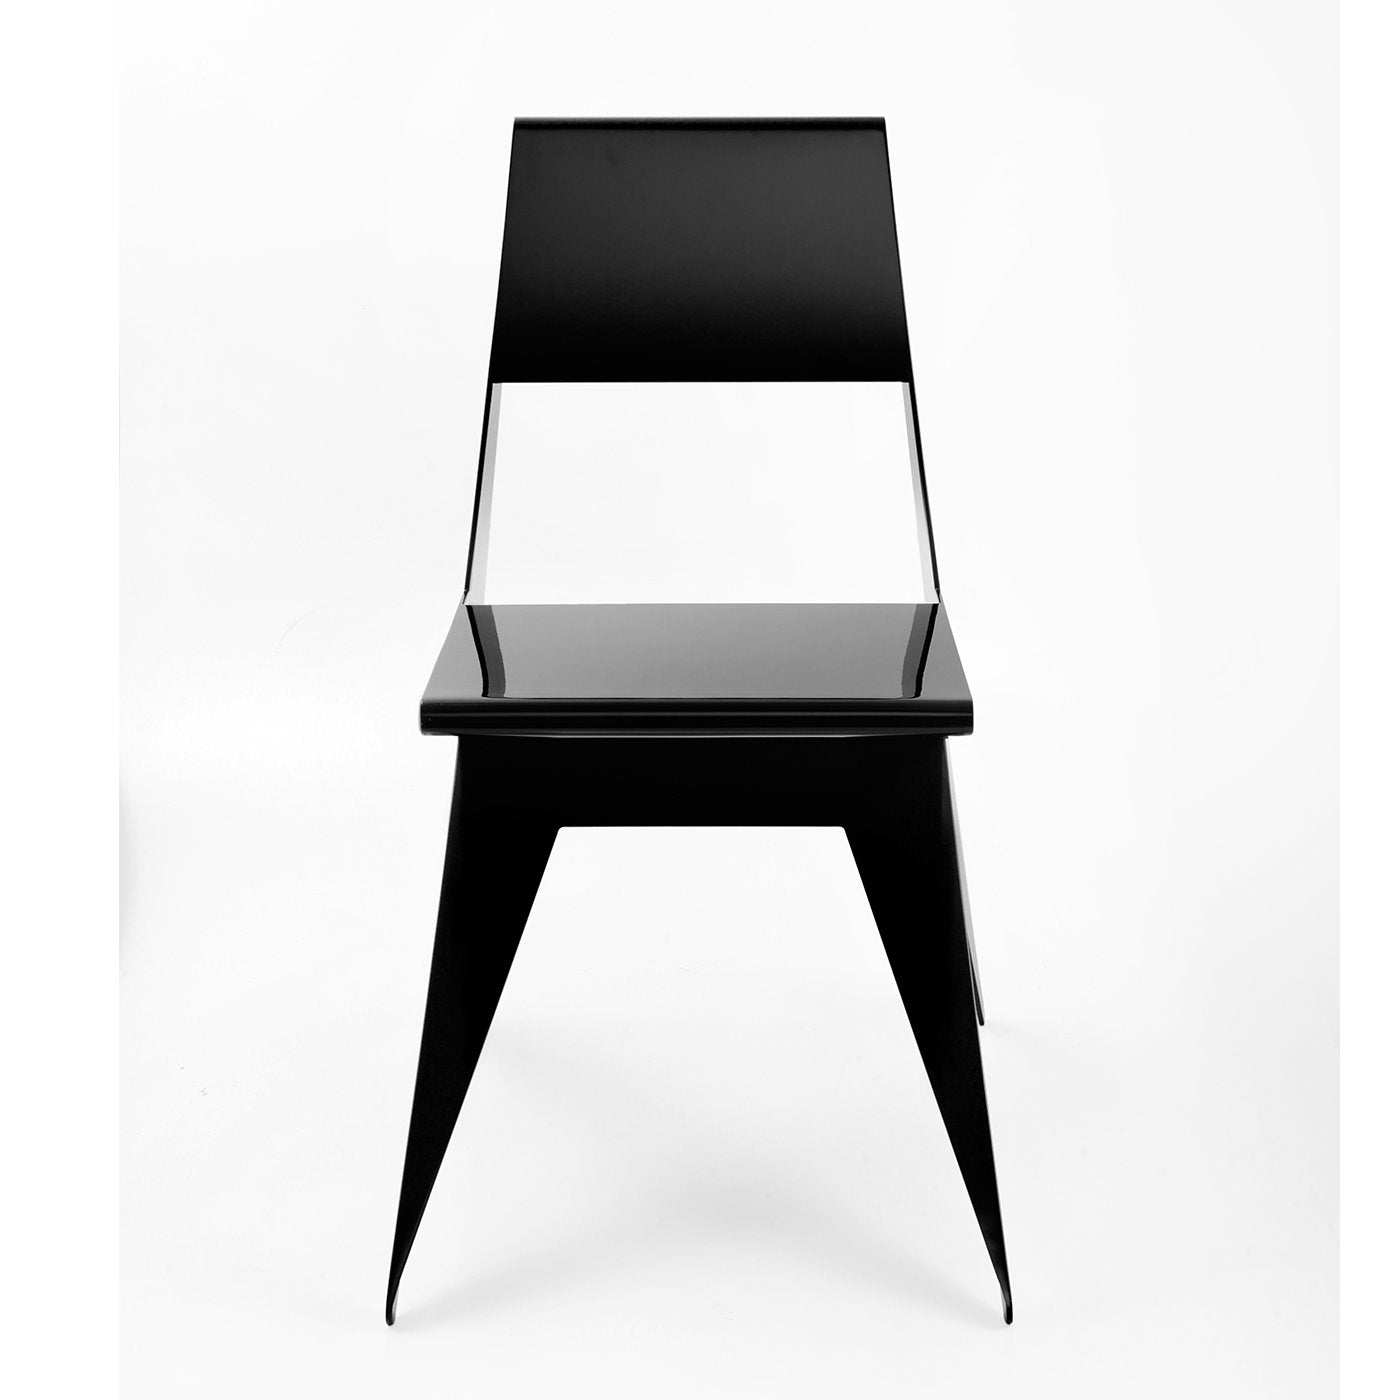 Star Black Chair by Antonio Pio Saracino - Alternative view 3